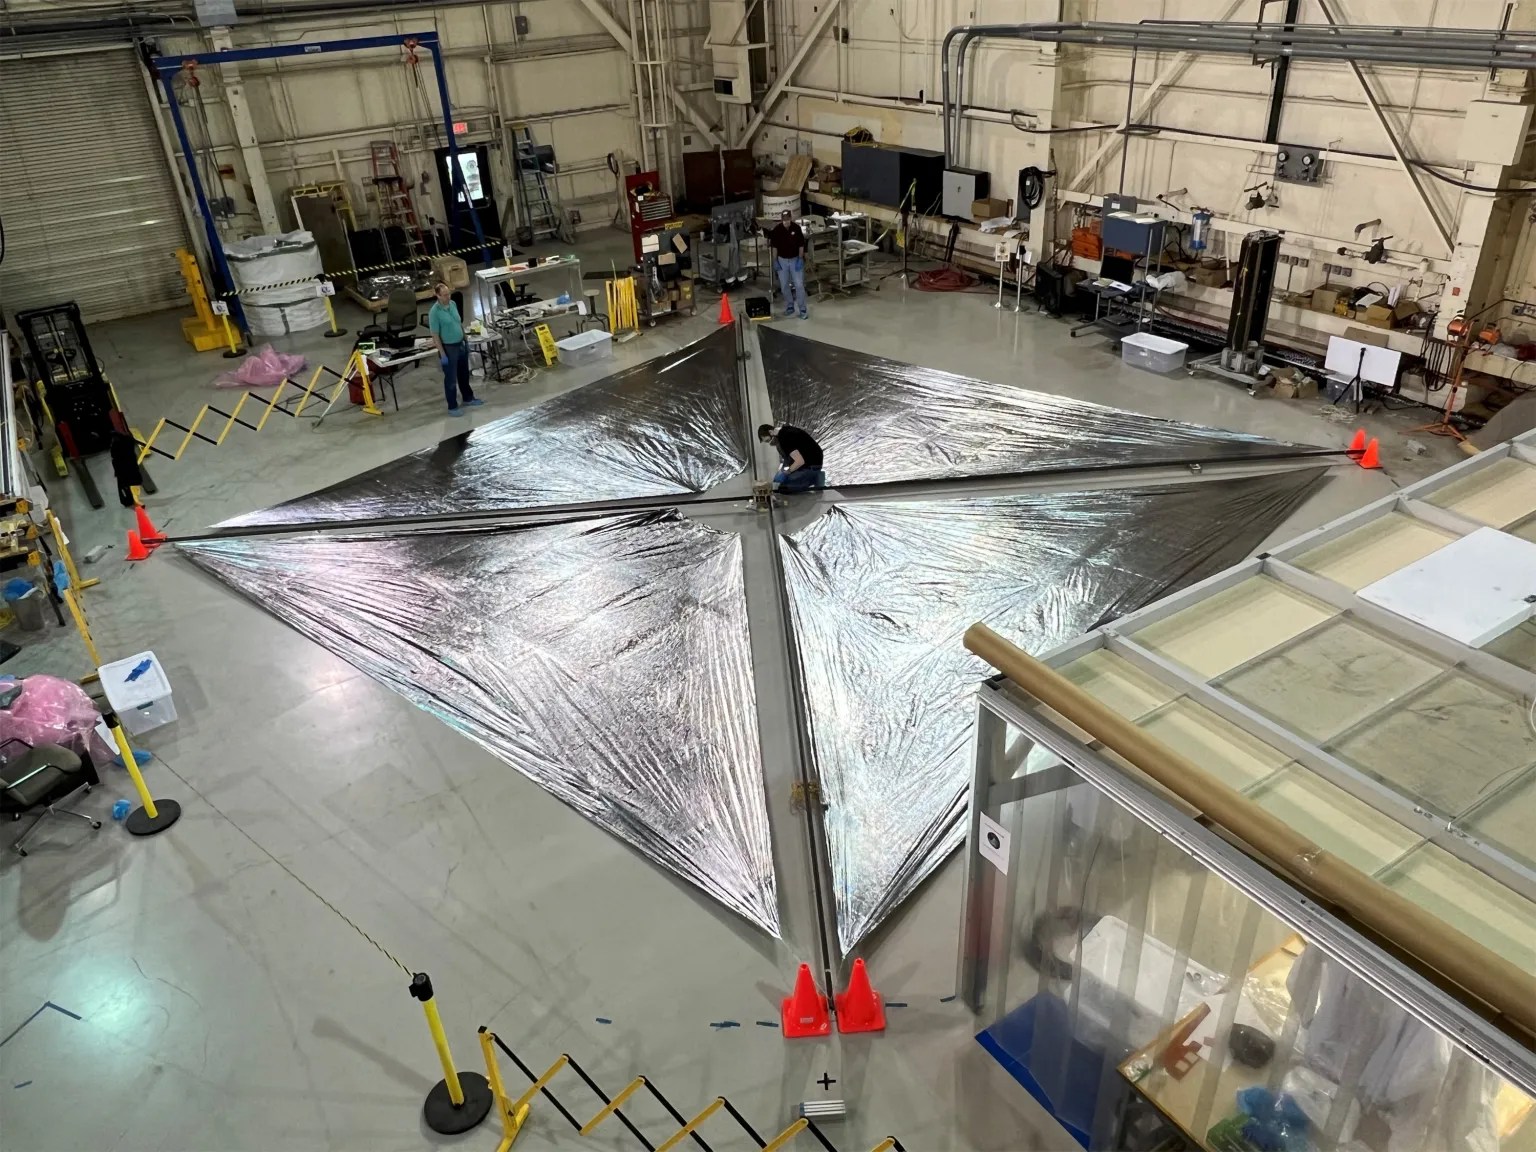 Media Encouraged to Explore NASA’s Innovative Solar Sail Technology